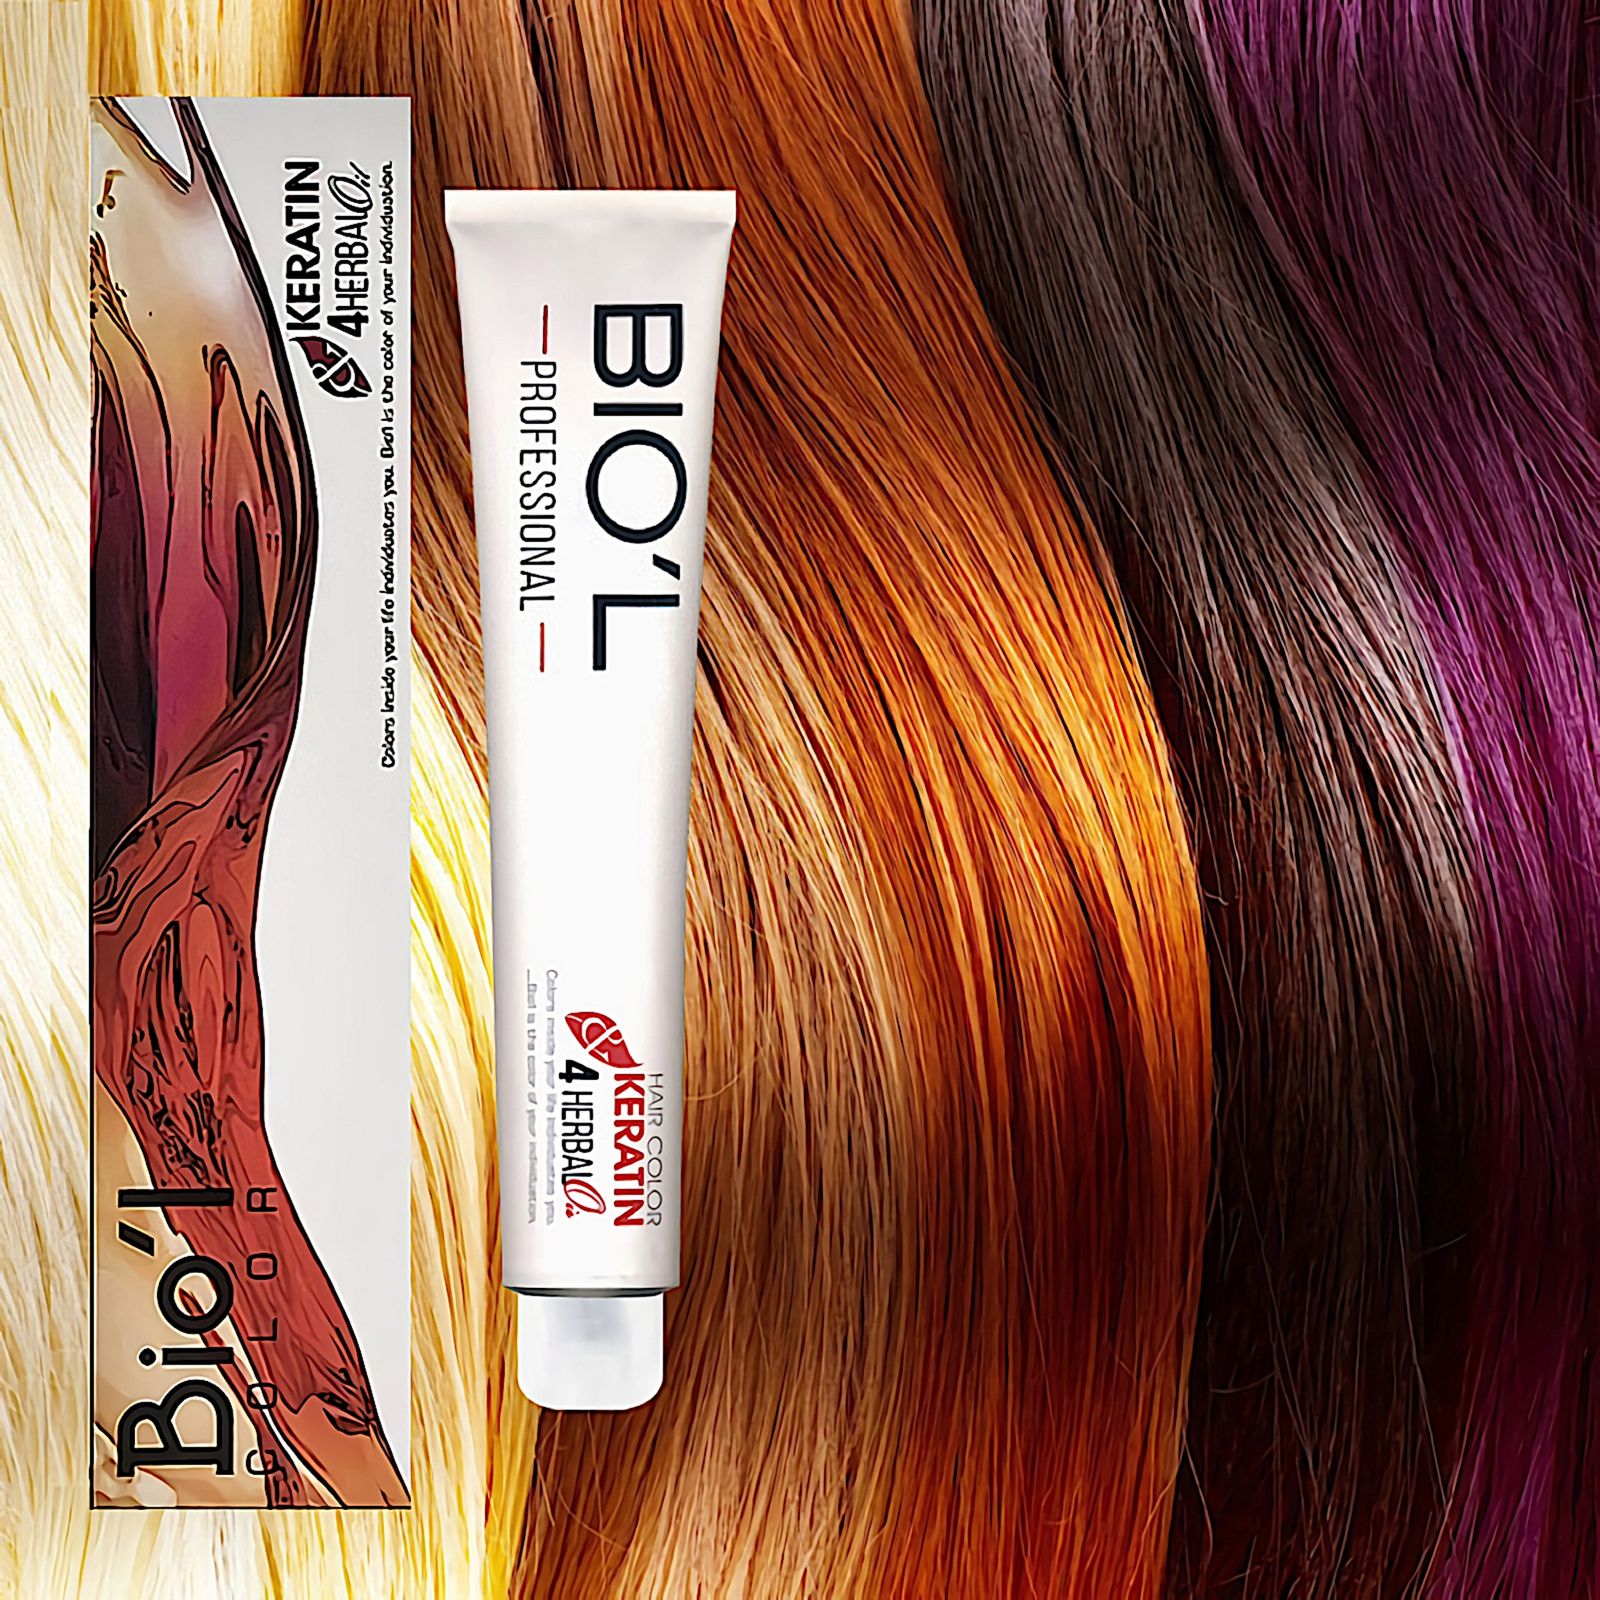 رنگ مو بیول سری professional شماره 7.1 حجم 100 میلی لیتر رنگ بلوند دودی متوسط -  - 2